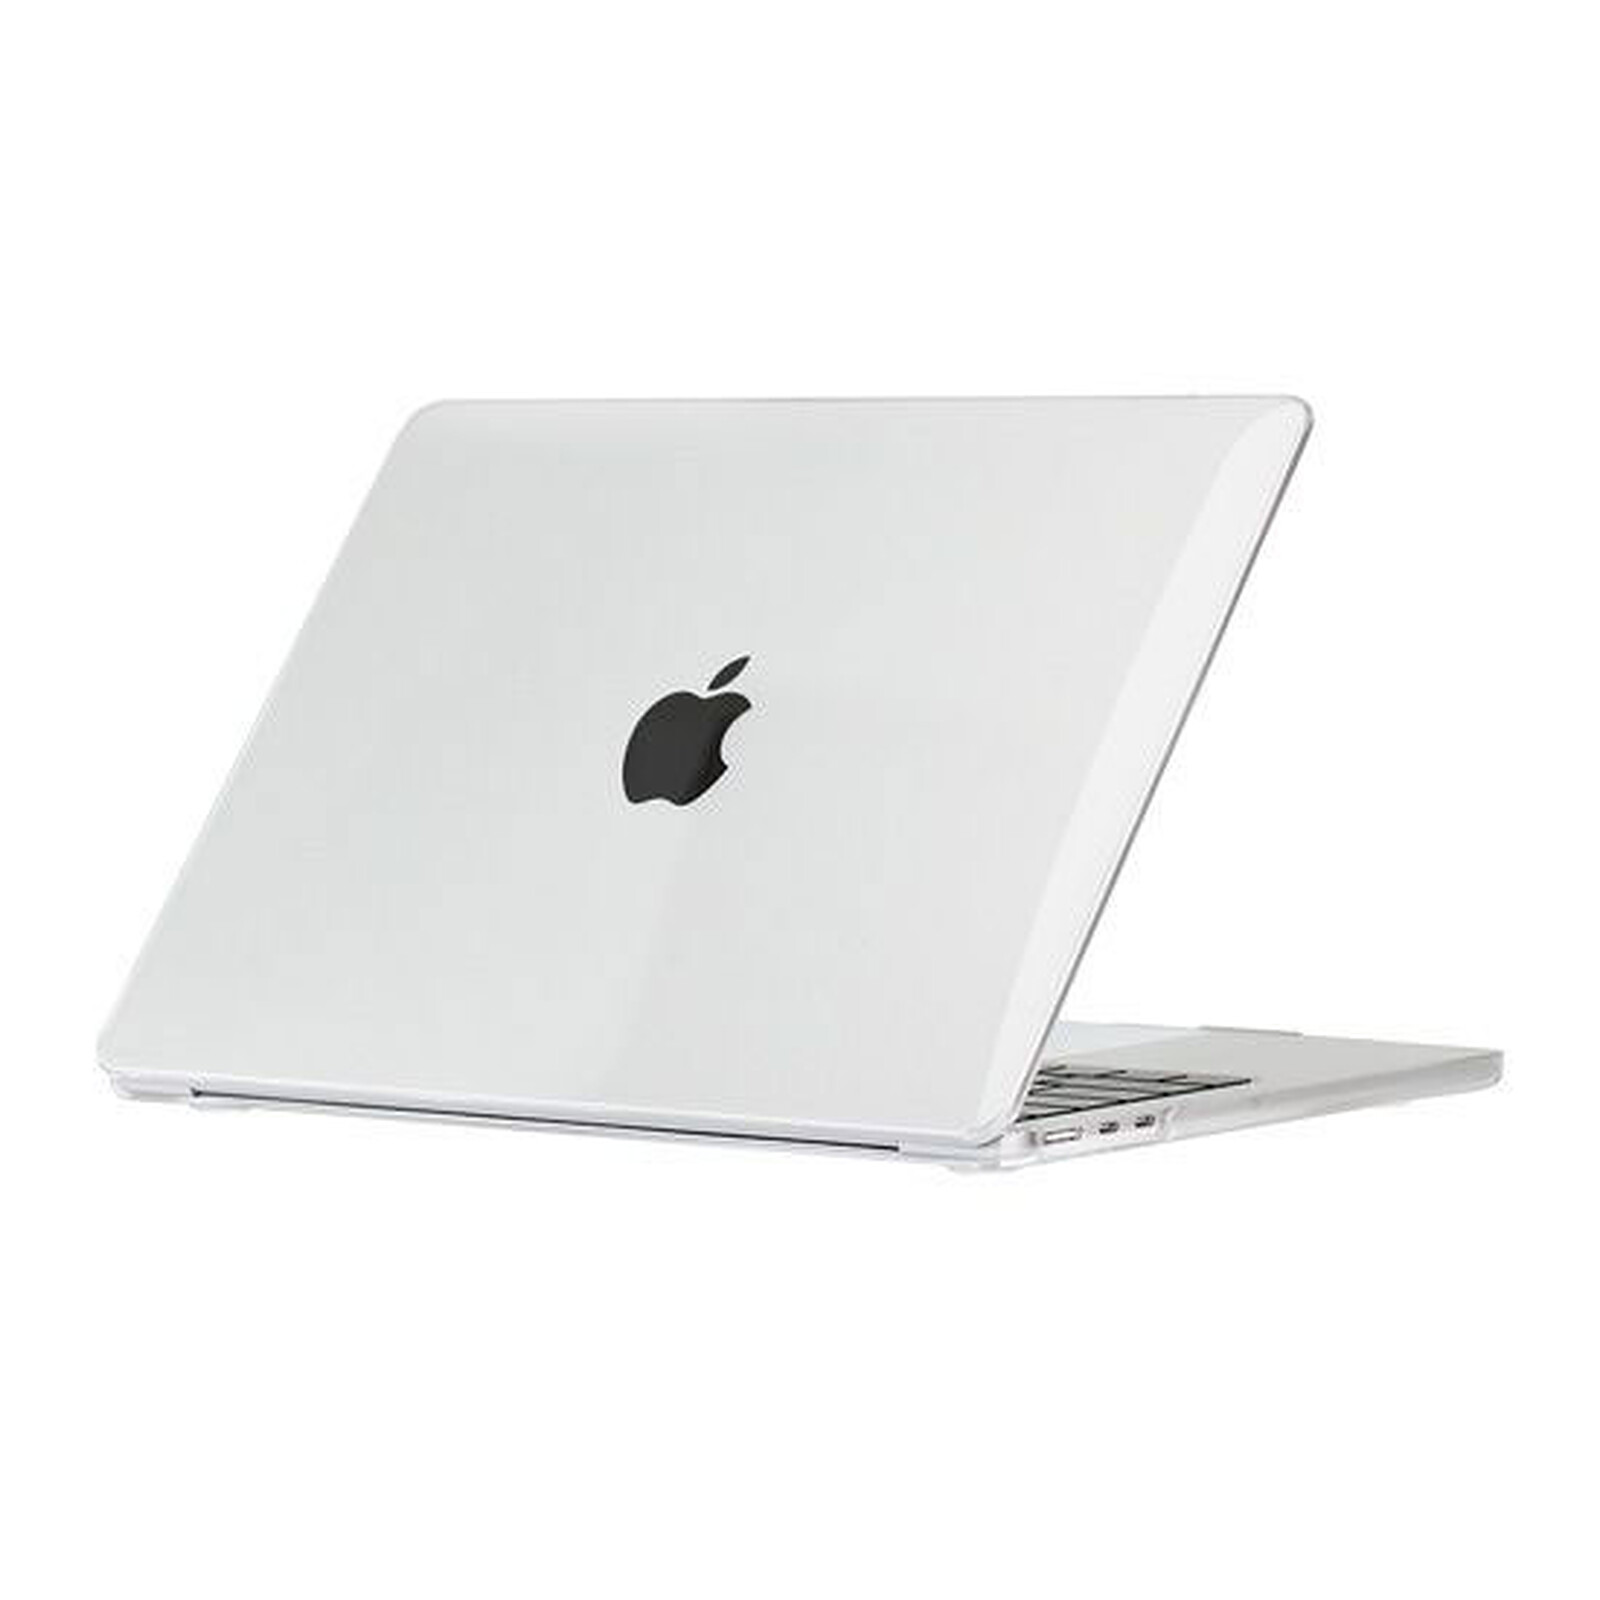 Coque Macbook Air 11 13 pouces personnalisée - Coque macbook air 11 13, Coque  macbook pro 13 15, Macbook 12, Housse Macbook Air, Housse Macbook  Pro